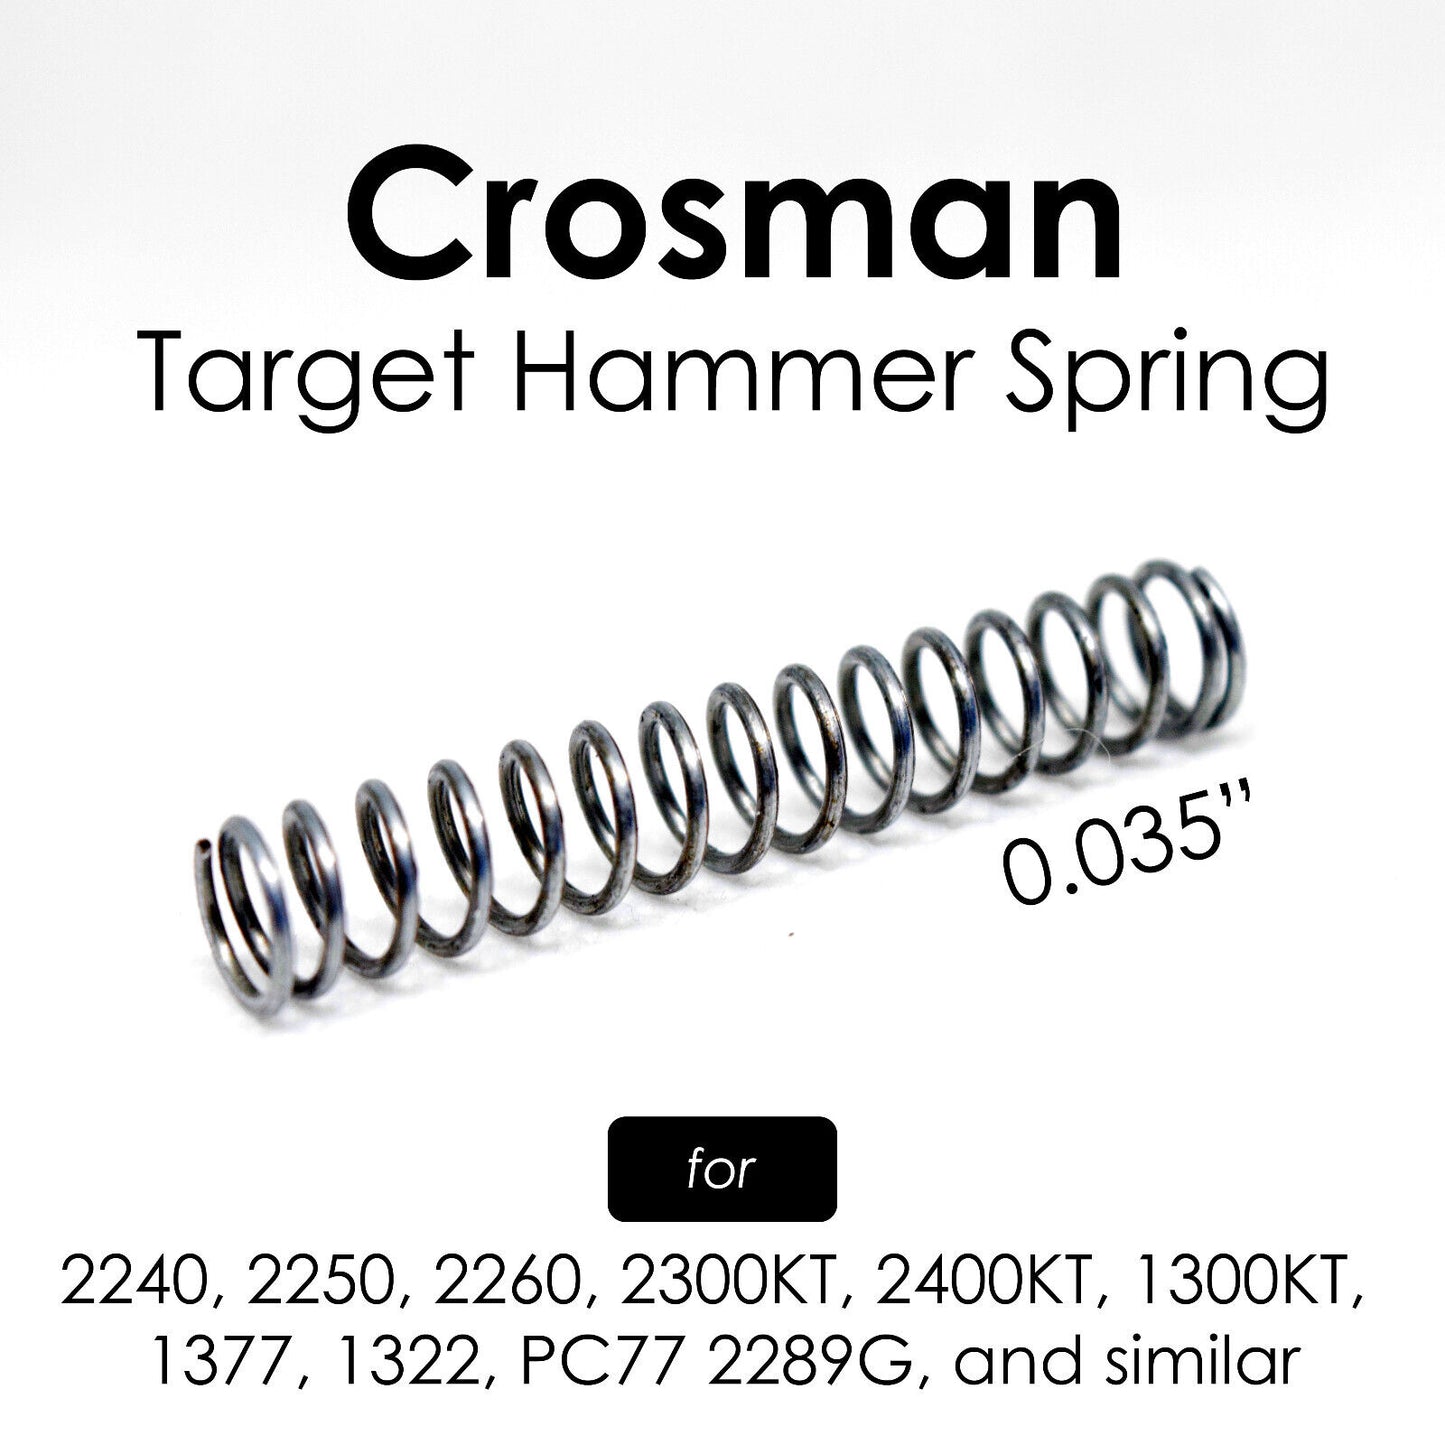 .035" Target Hammer Spring for Crosman 1377, 1322, 2240, 2300KT, 2400KT, 1300KT